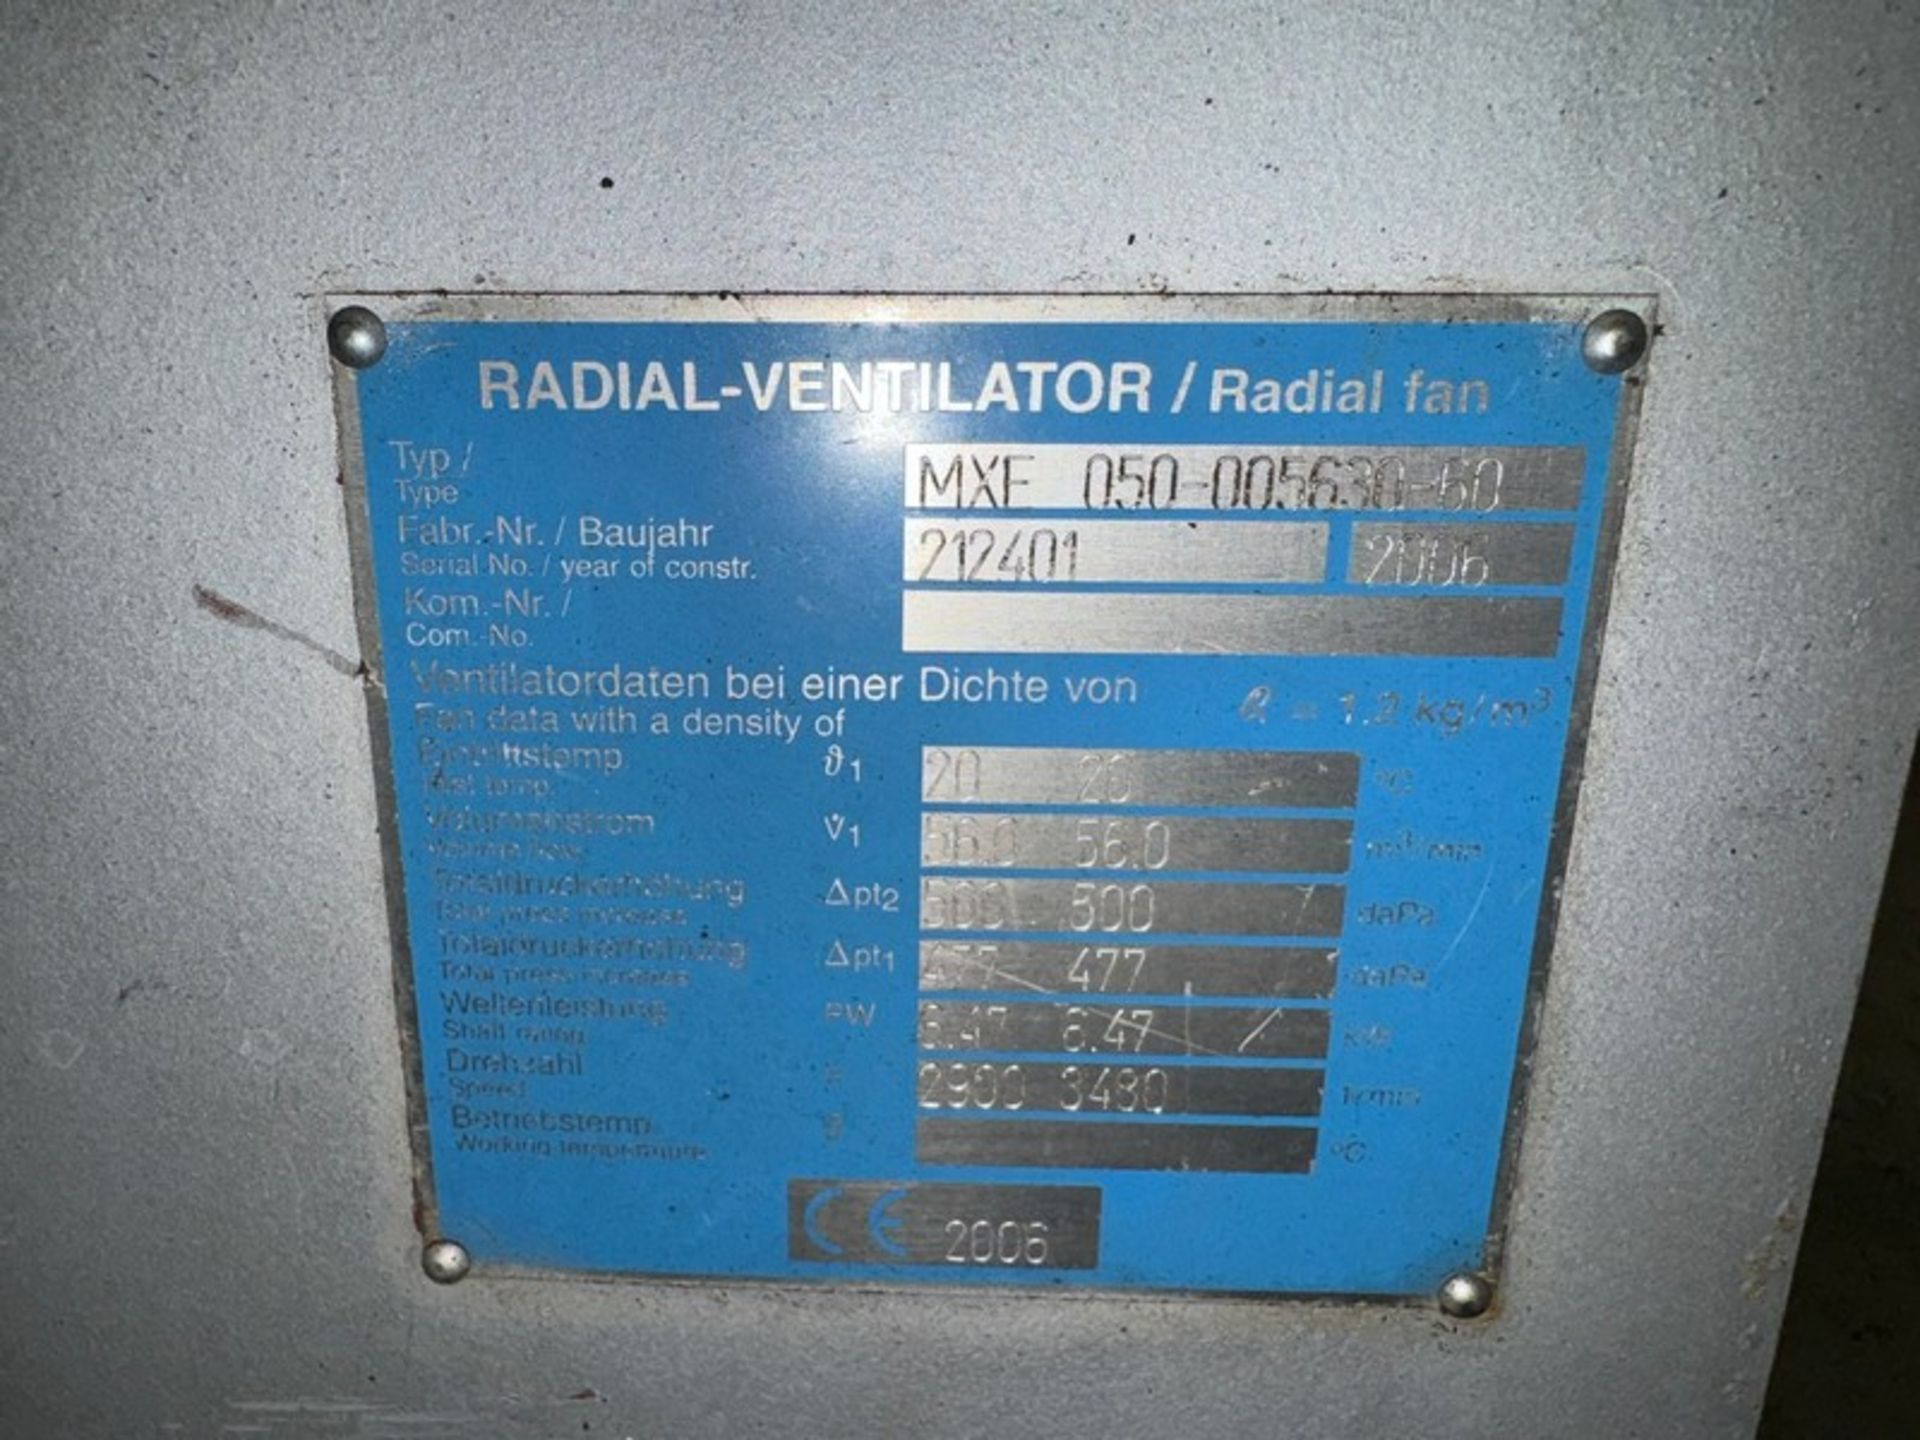 2006 Wartung der Öllager Radial Fresh Air Fan, M/N MXF 050-005630-60, S/N 212401, with Siemen - Image 4 of 5